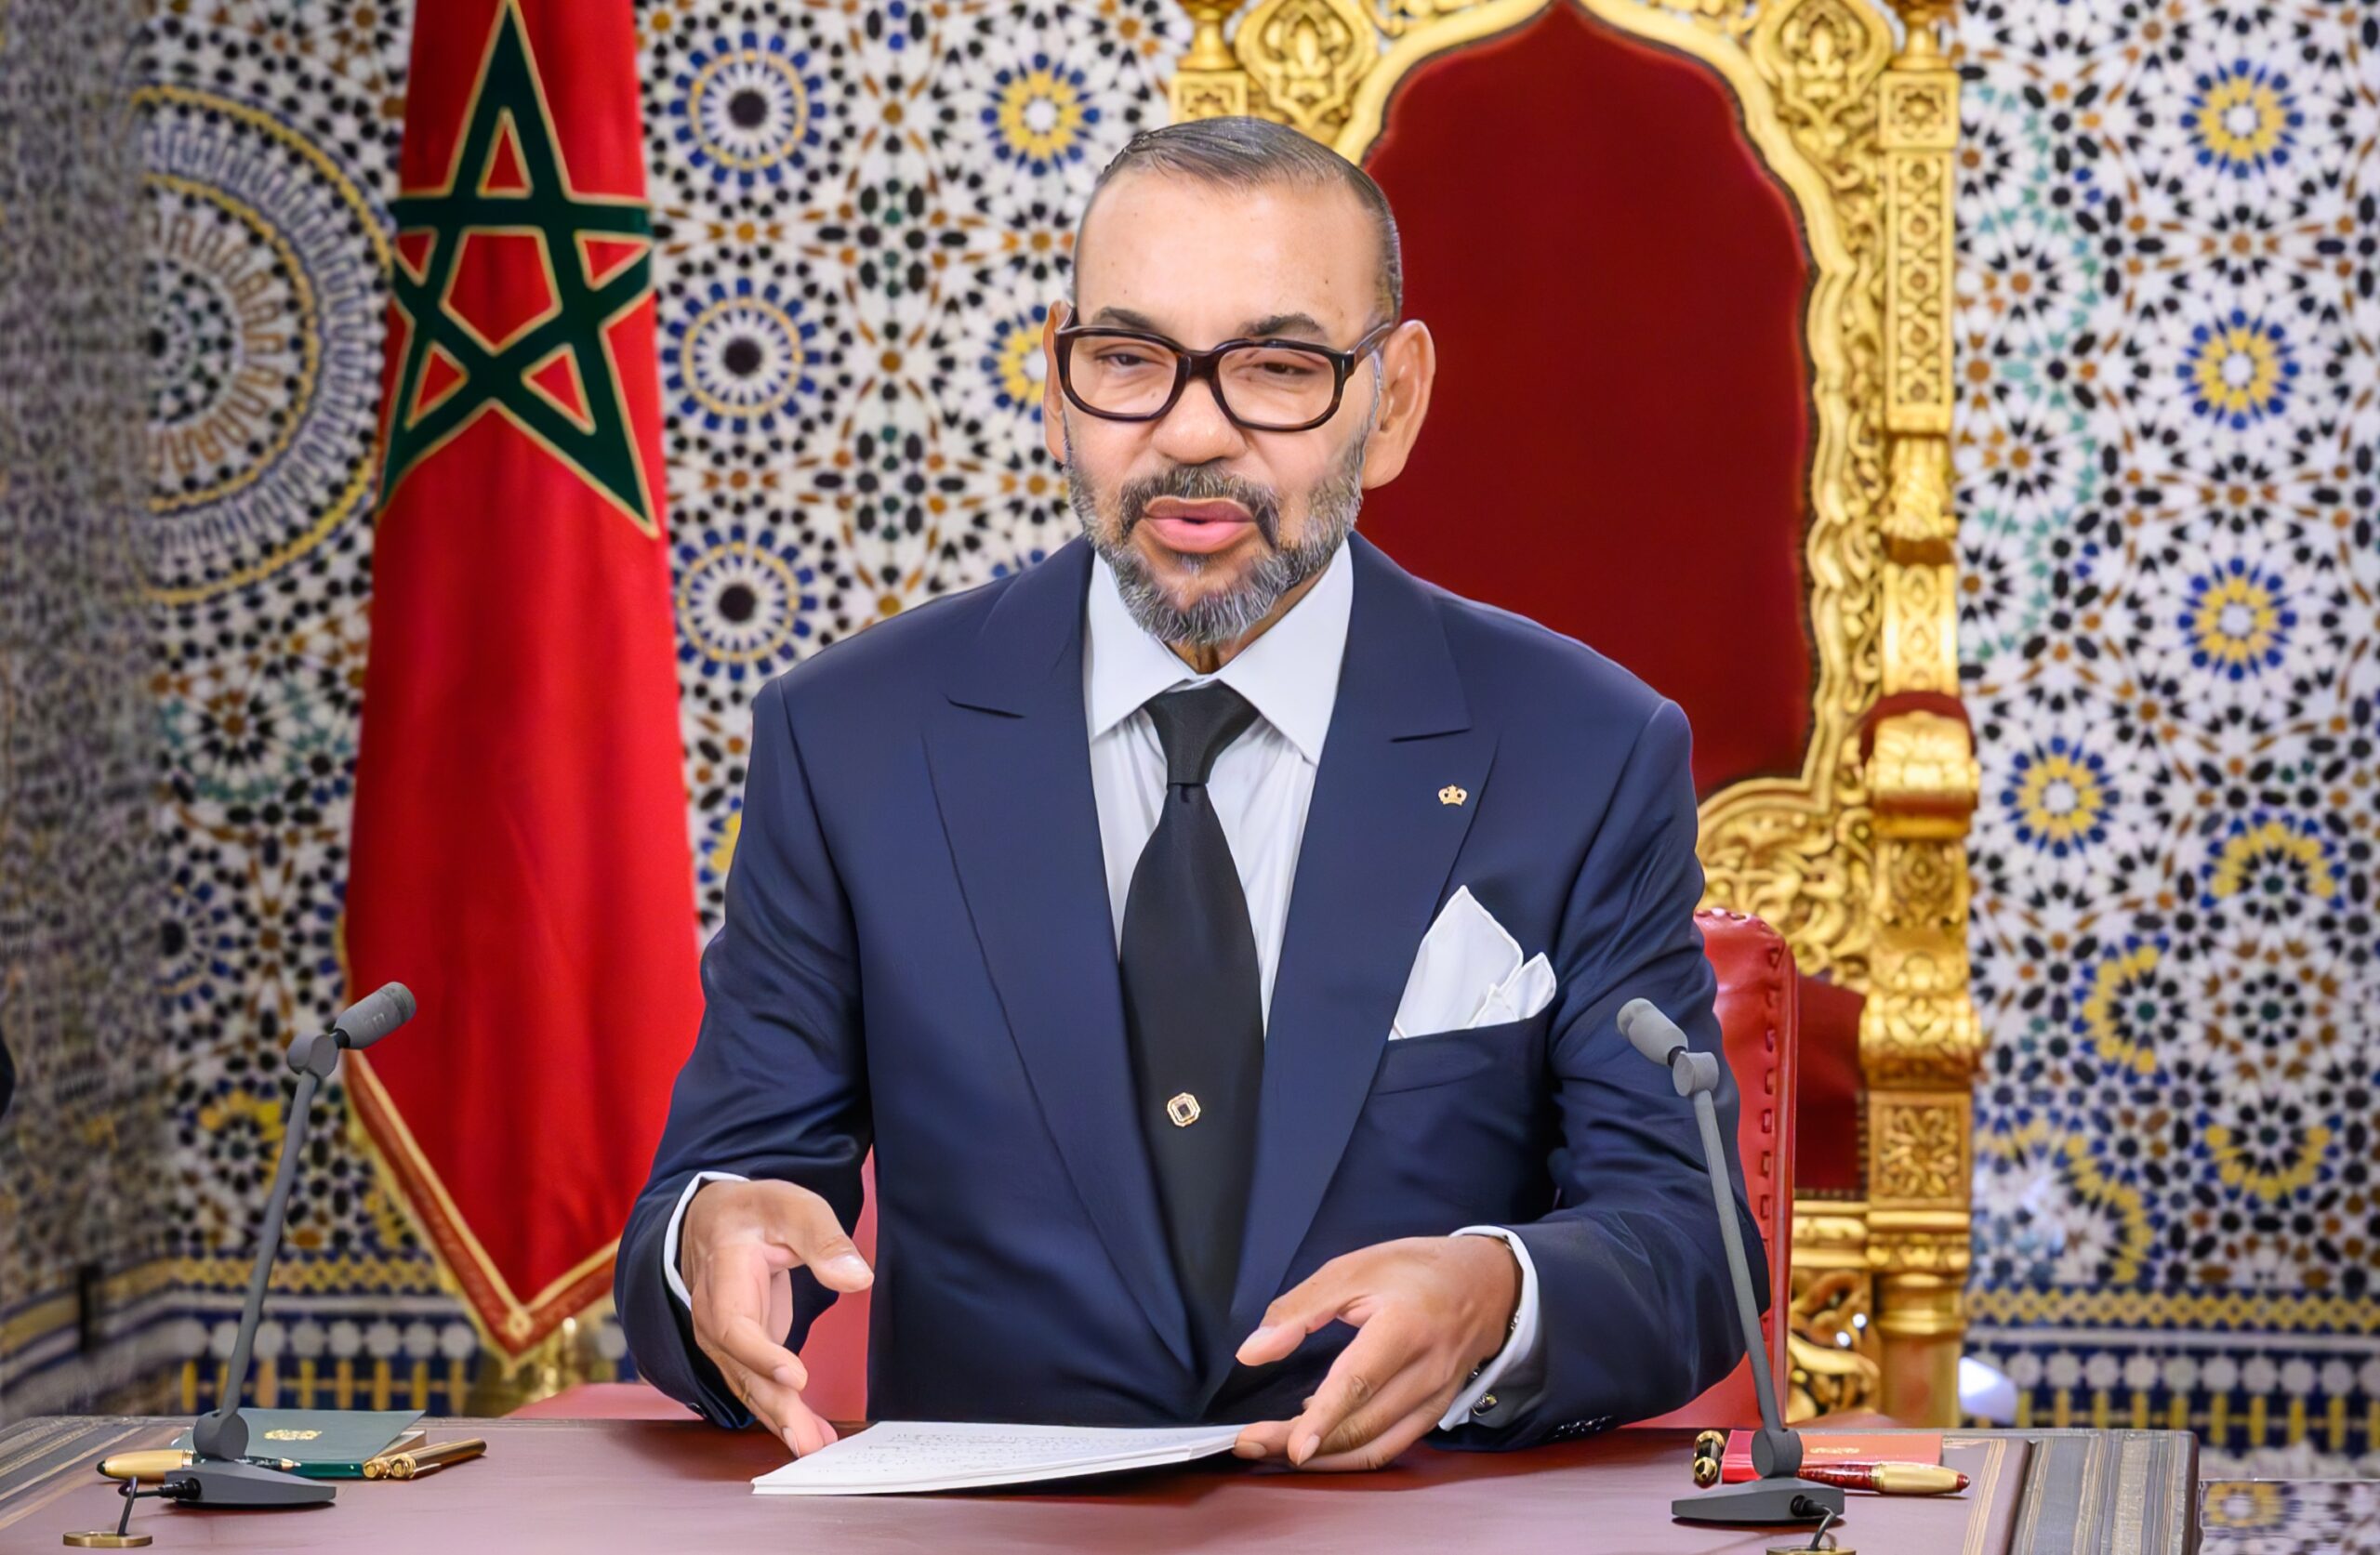 Maroc: Le Roi Mohammed VI souligne le sérieux, le travail et la confiance comme valeurs constantes qui font la force du Royaume